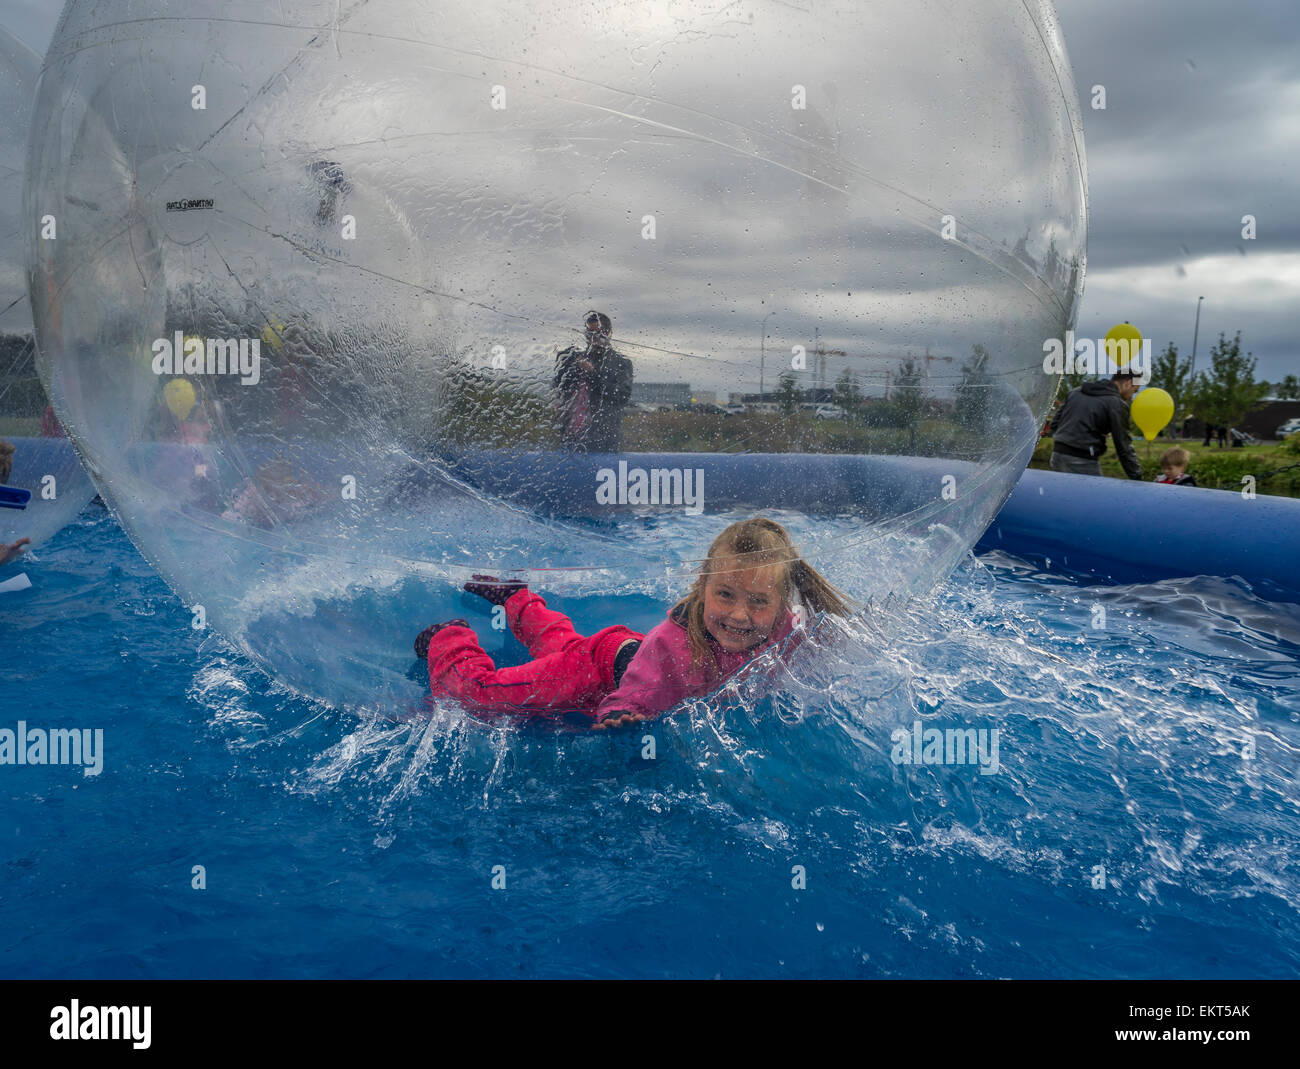 Junge Mädchen in einem riesigen sehen - durch Aufblasbare Kugel als "Wasser wandern Bälle', Sommerfest, Reykjavik, Island bekannt Stockfoto